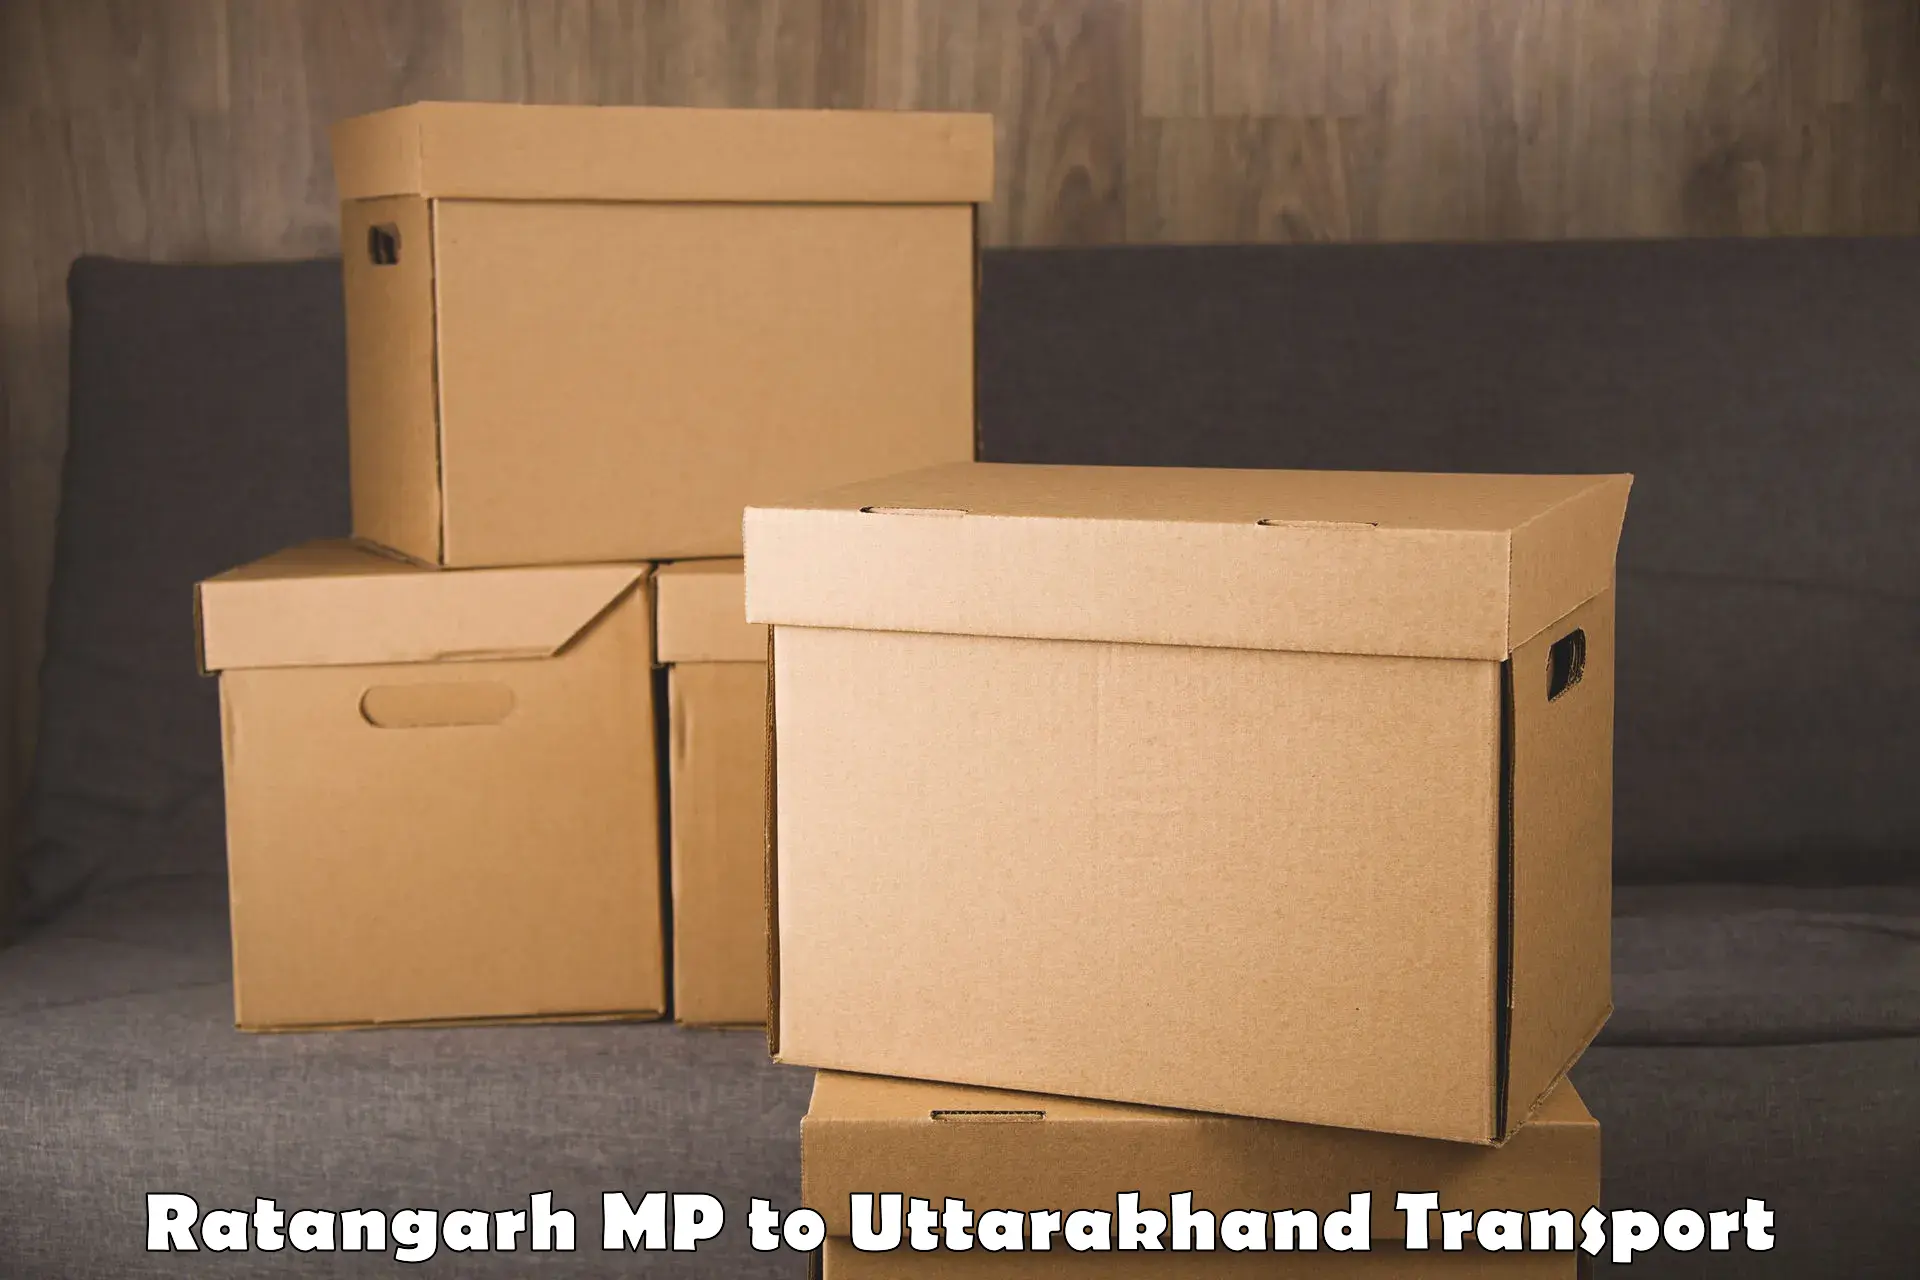 Furniture transport service Ratangarh MP to Dwarahat